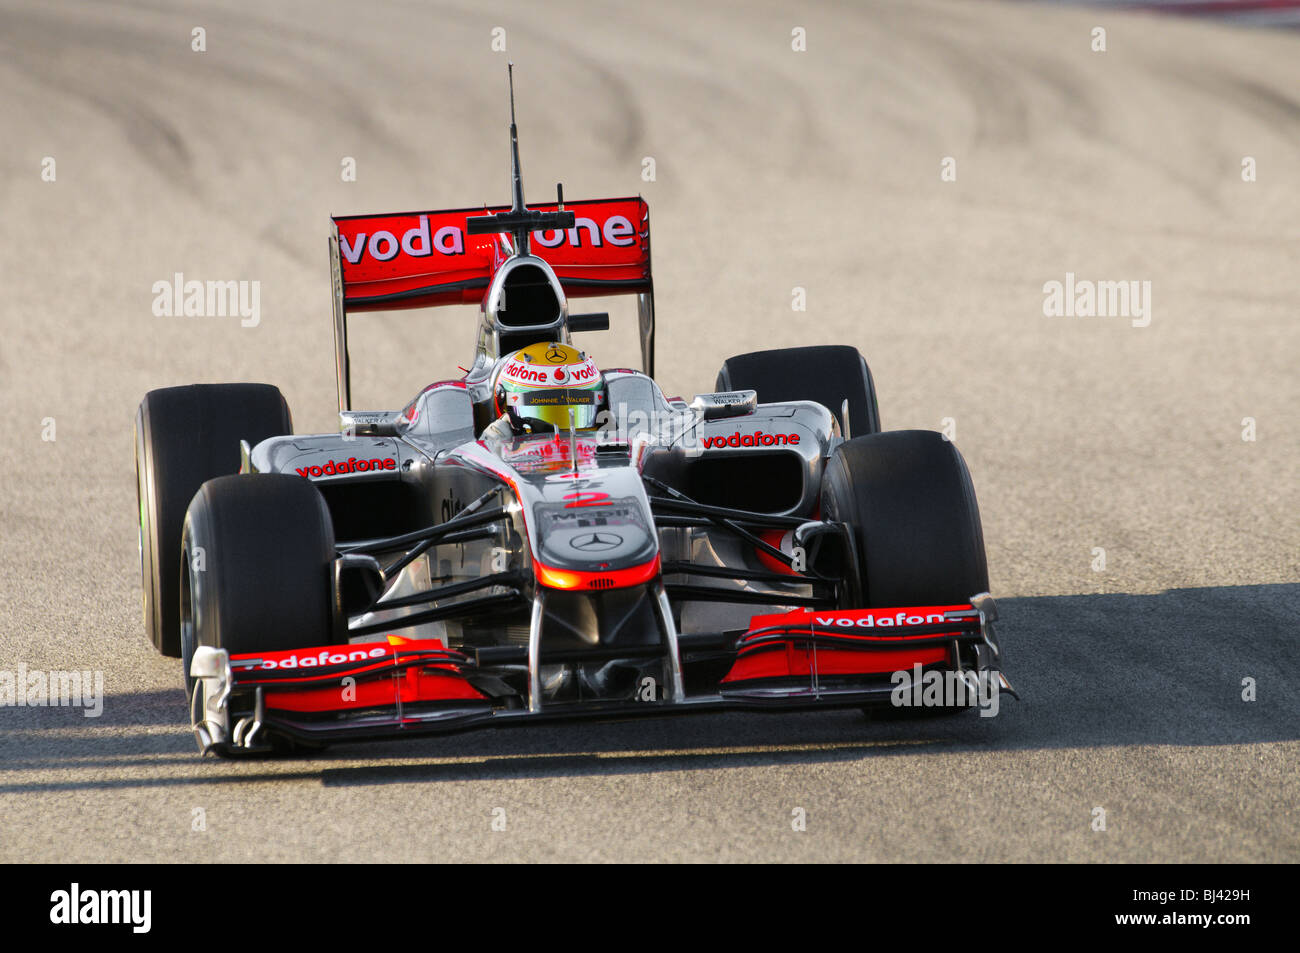 Lewis Hamilton (GB) en los McLaren-Mercedes MP4-25 race car durante las pruebas de Fórmula 1 Foto de stock